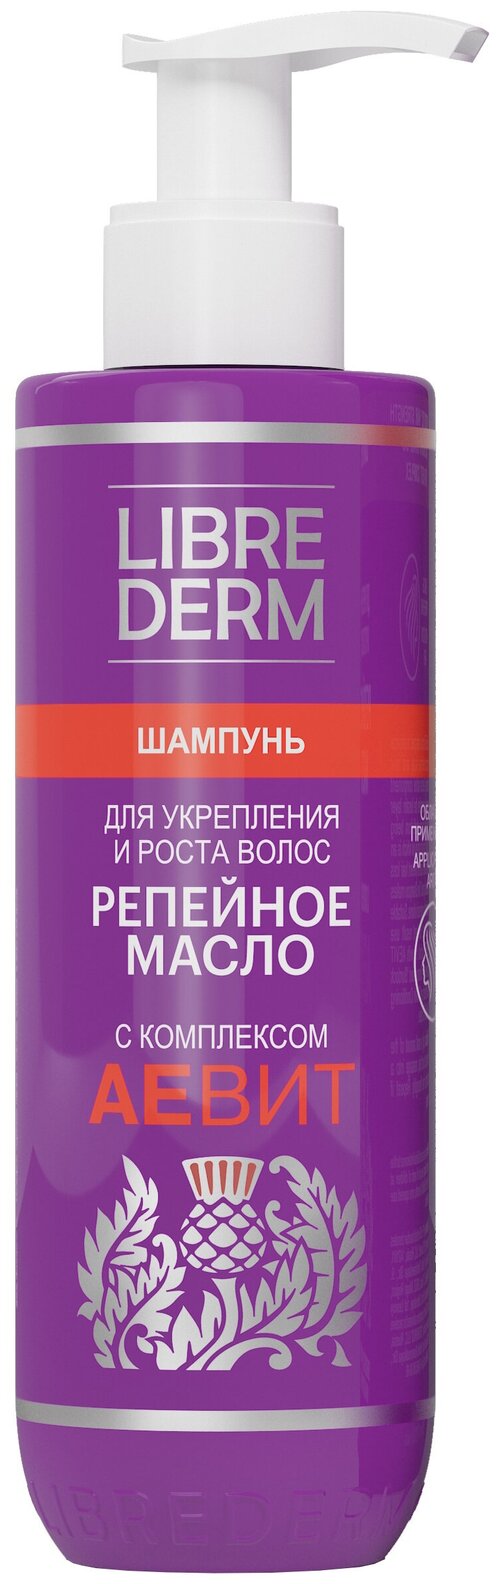 Librederm шампунь Репейное масло с комплексом Аевит для укрепления и роста волос, 200 мл